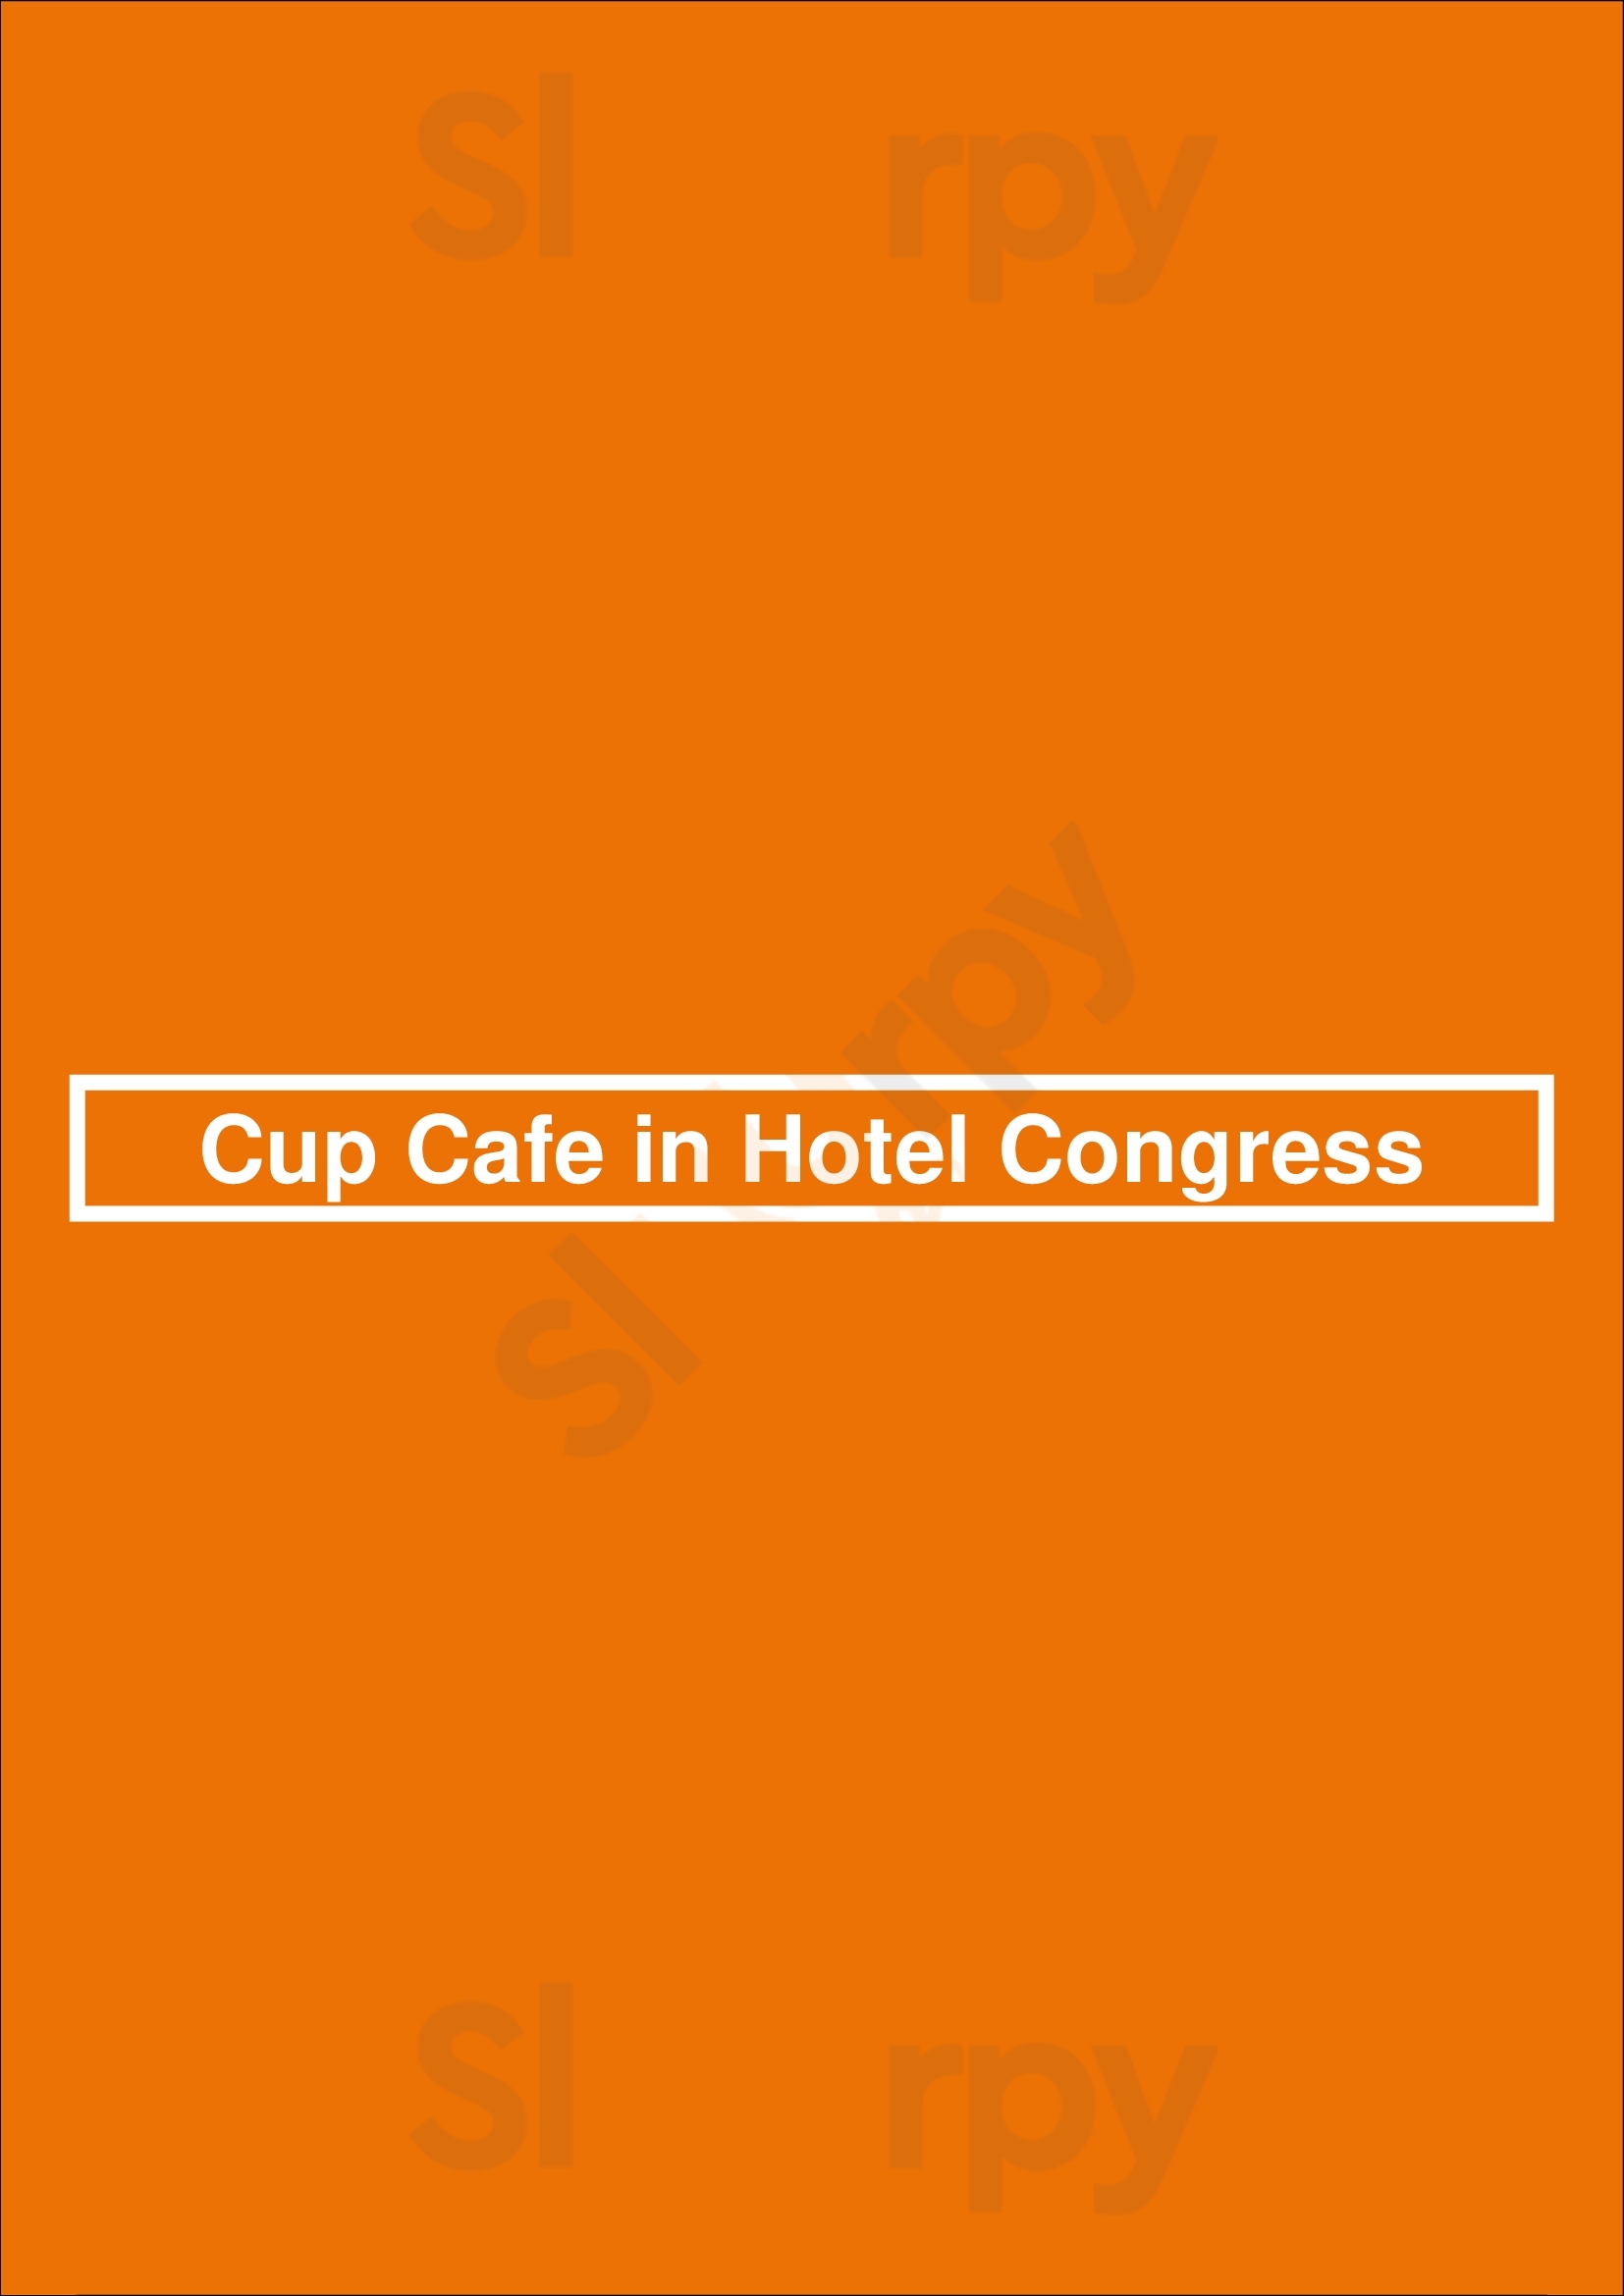 Cup Cafe In Hotel Congress Tucson Menu - 1